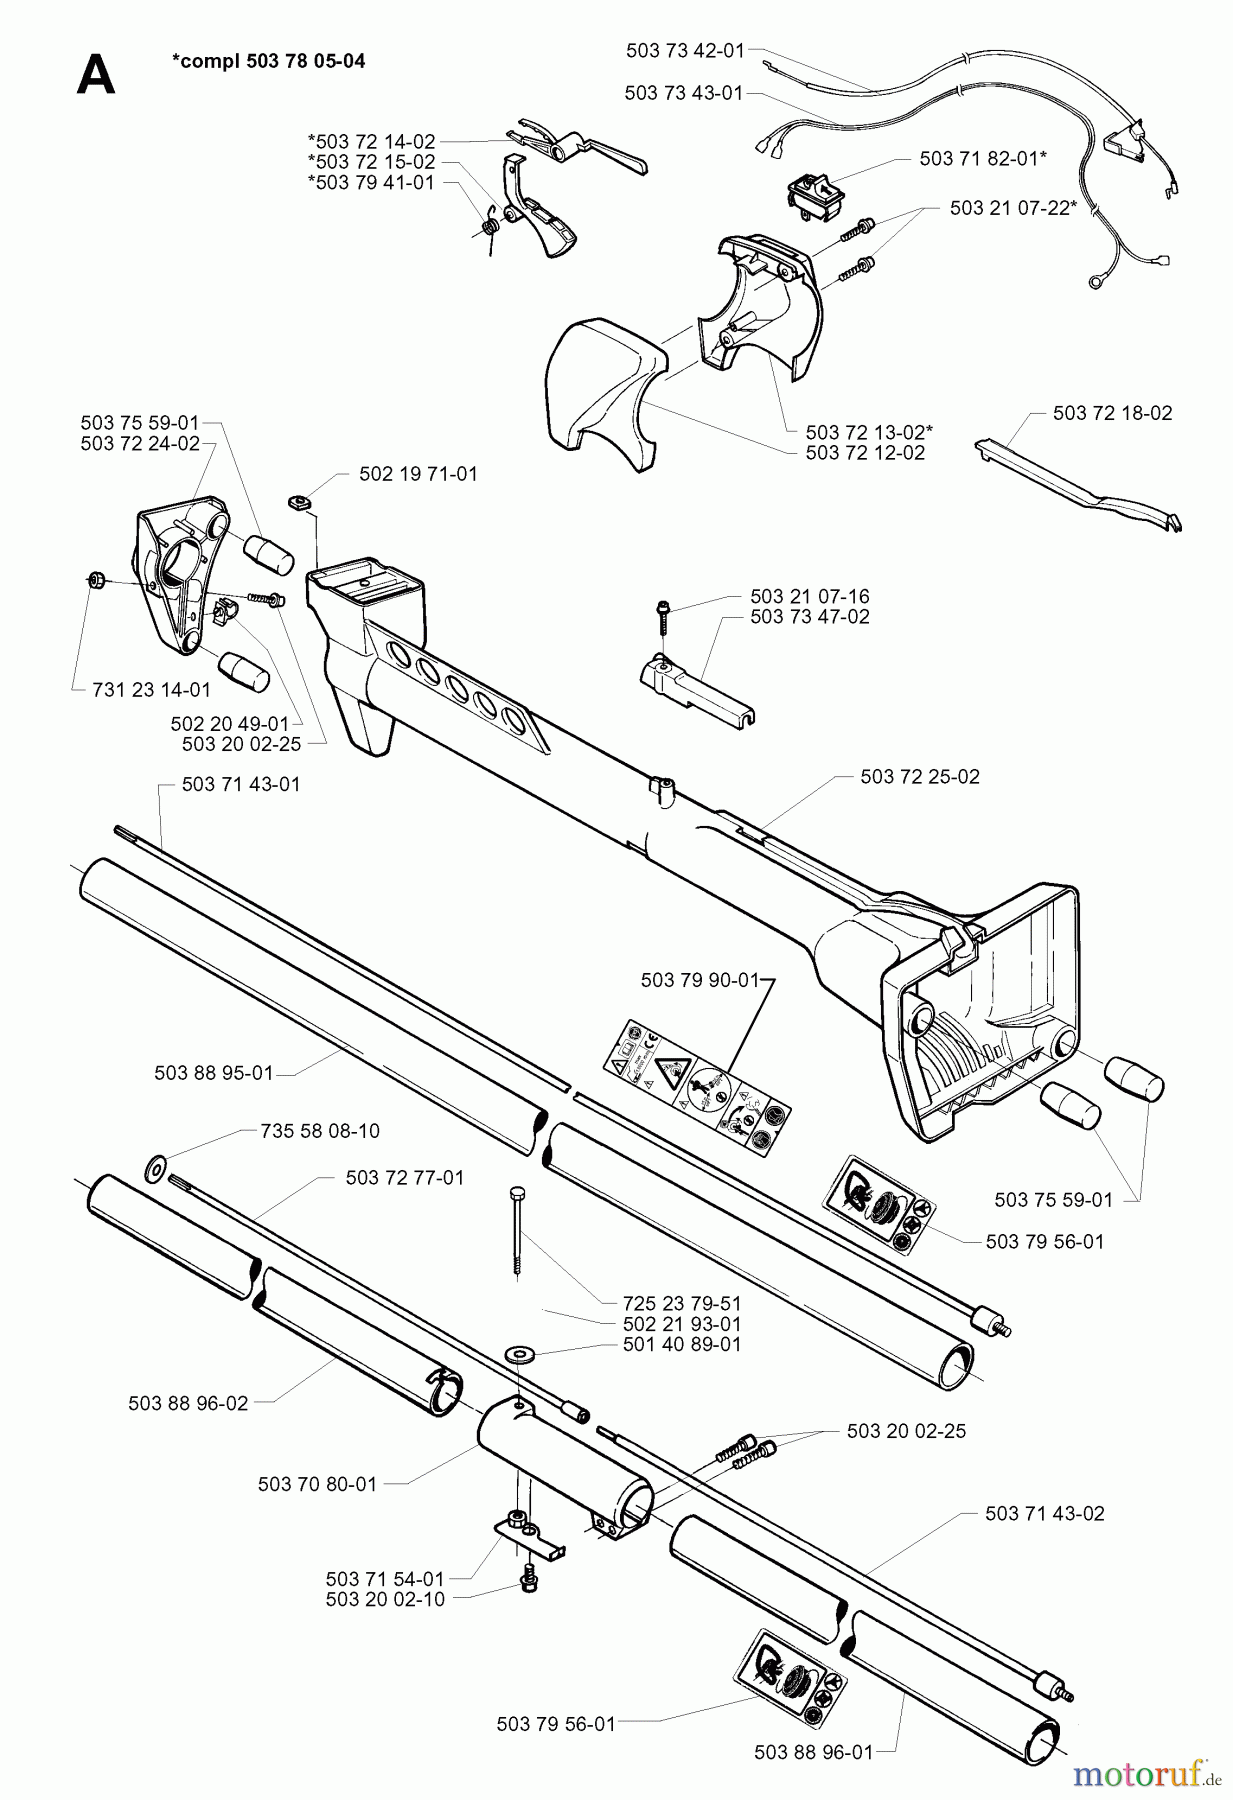  Jonsered Motorsensen, Trimmer GR2026 - Jonsered String/Brush Trimmer (1997-02) SHAFT HANDLE